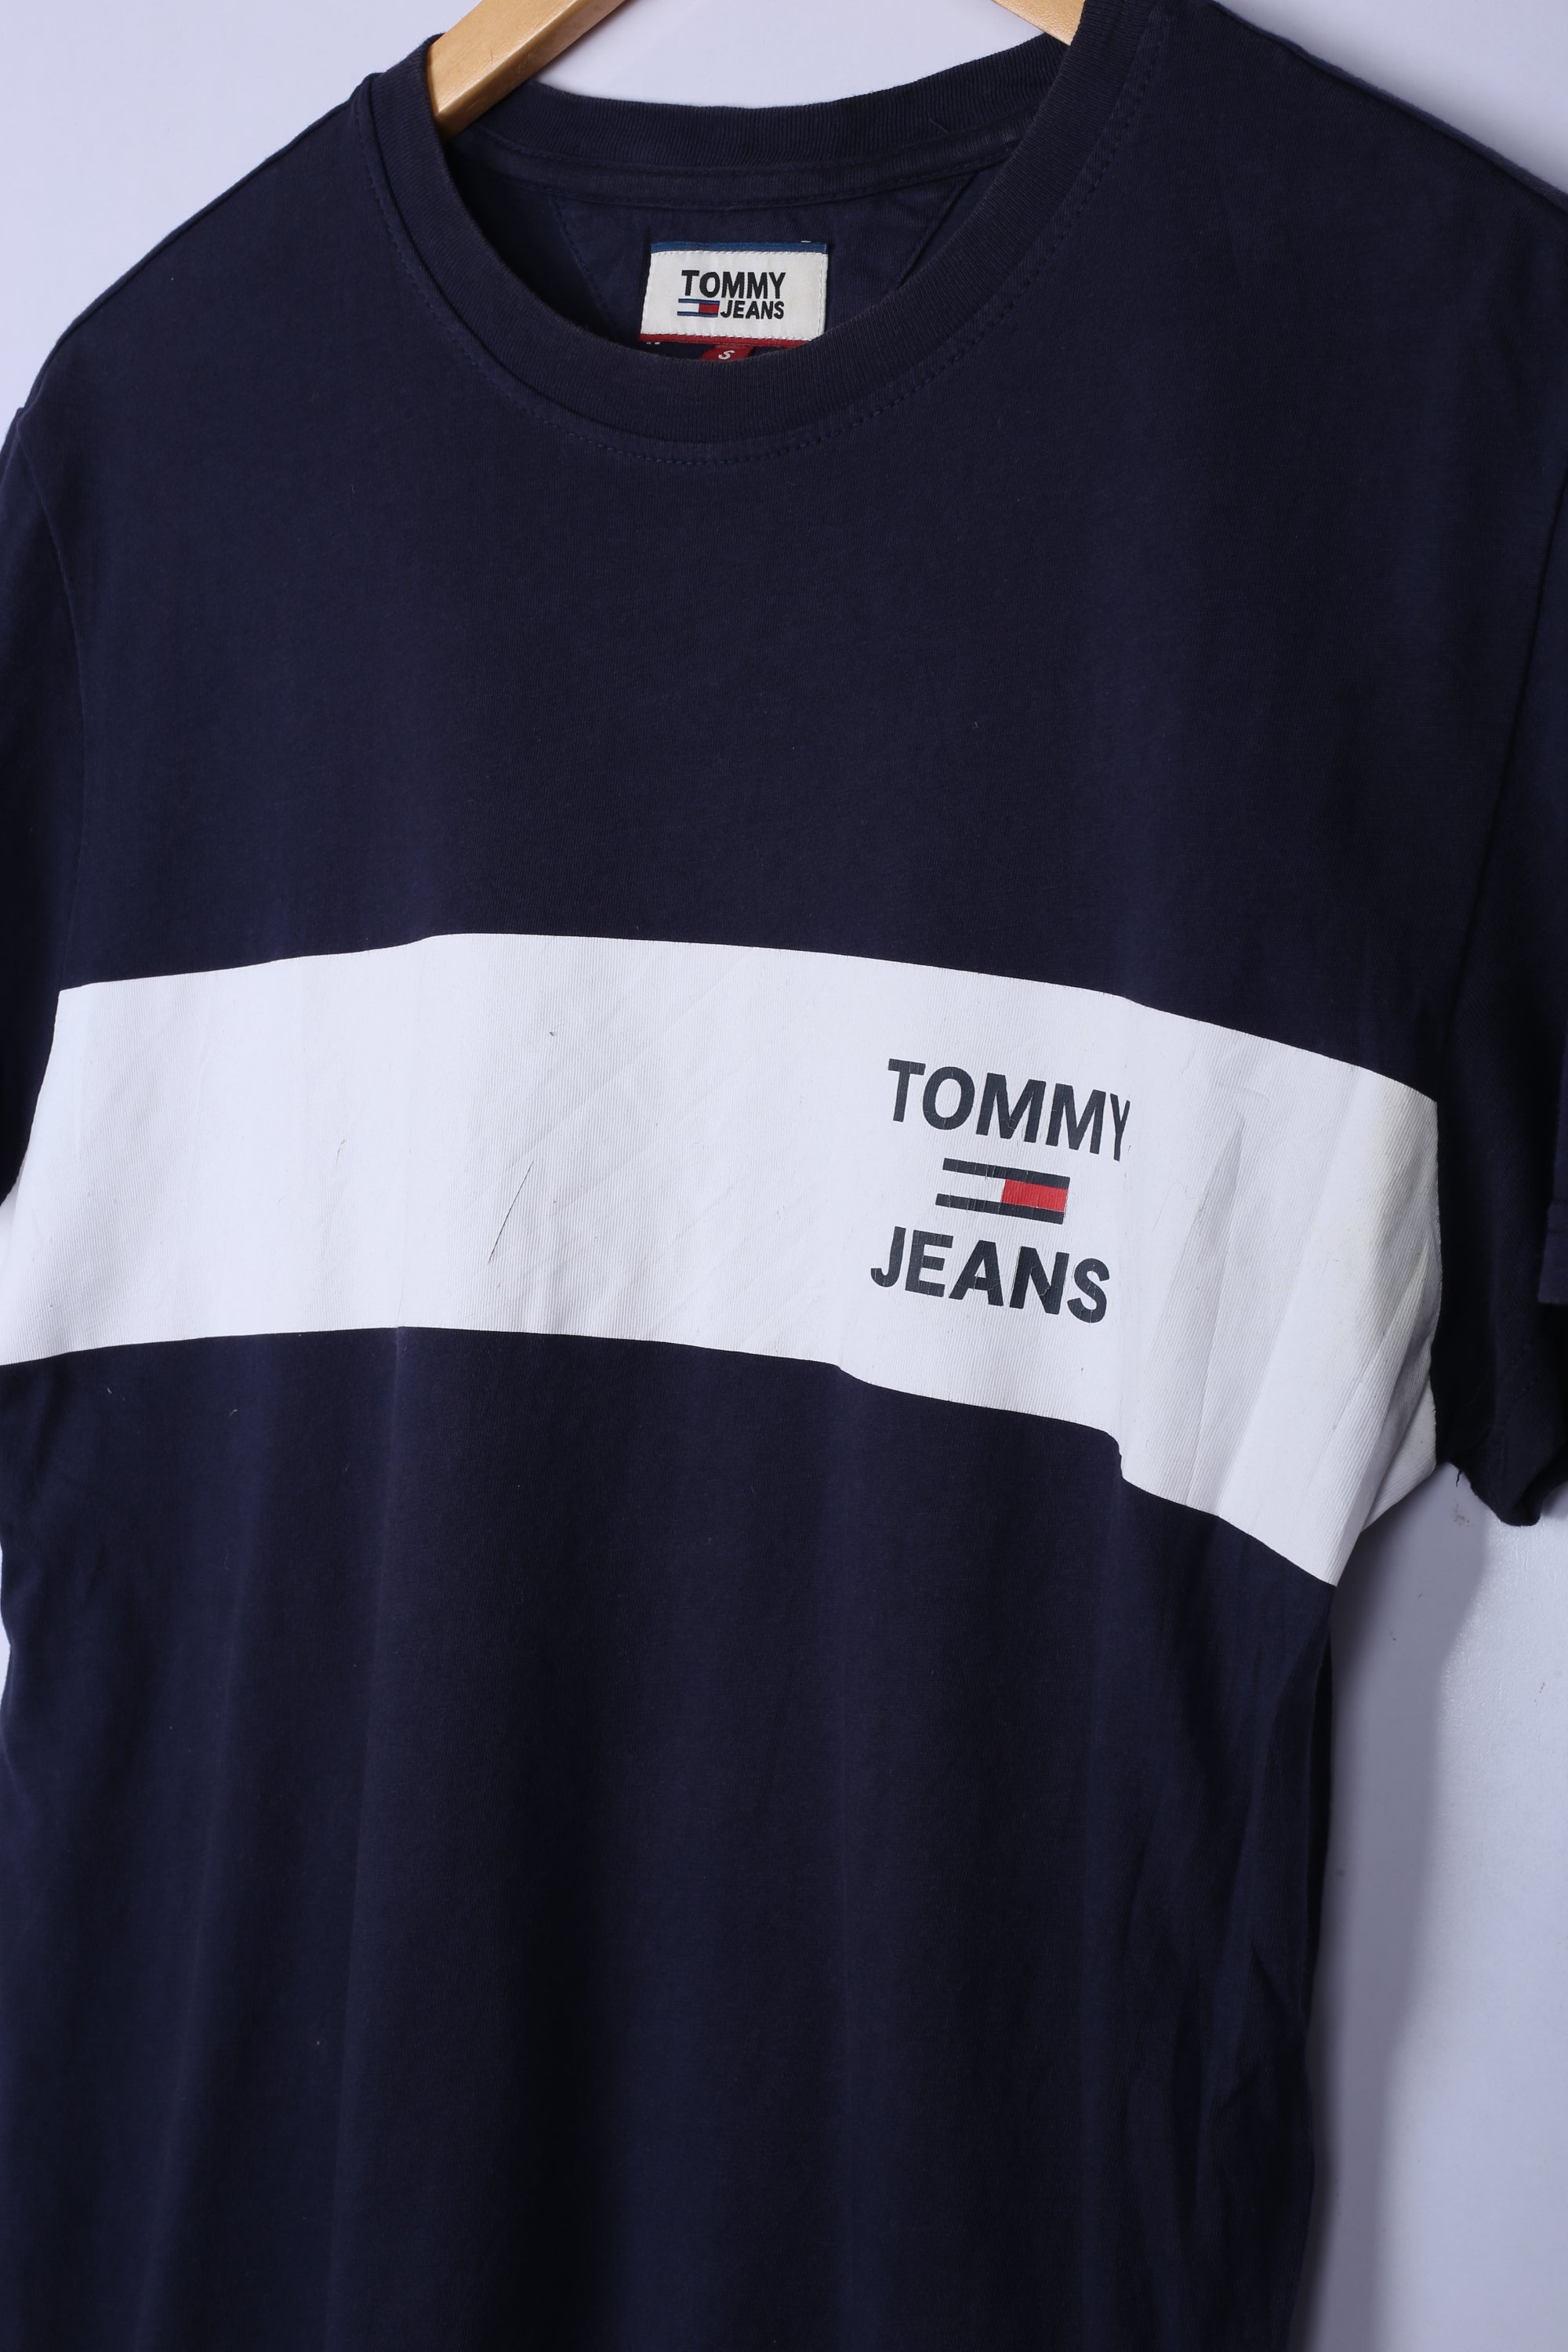 Vintage Tommy Hilfiger Tee Navy